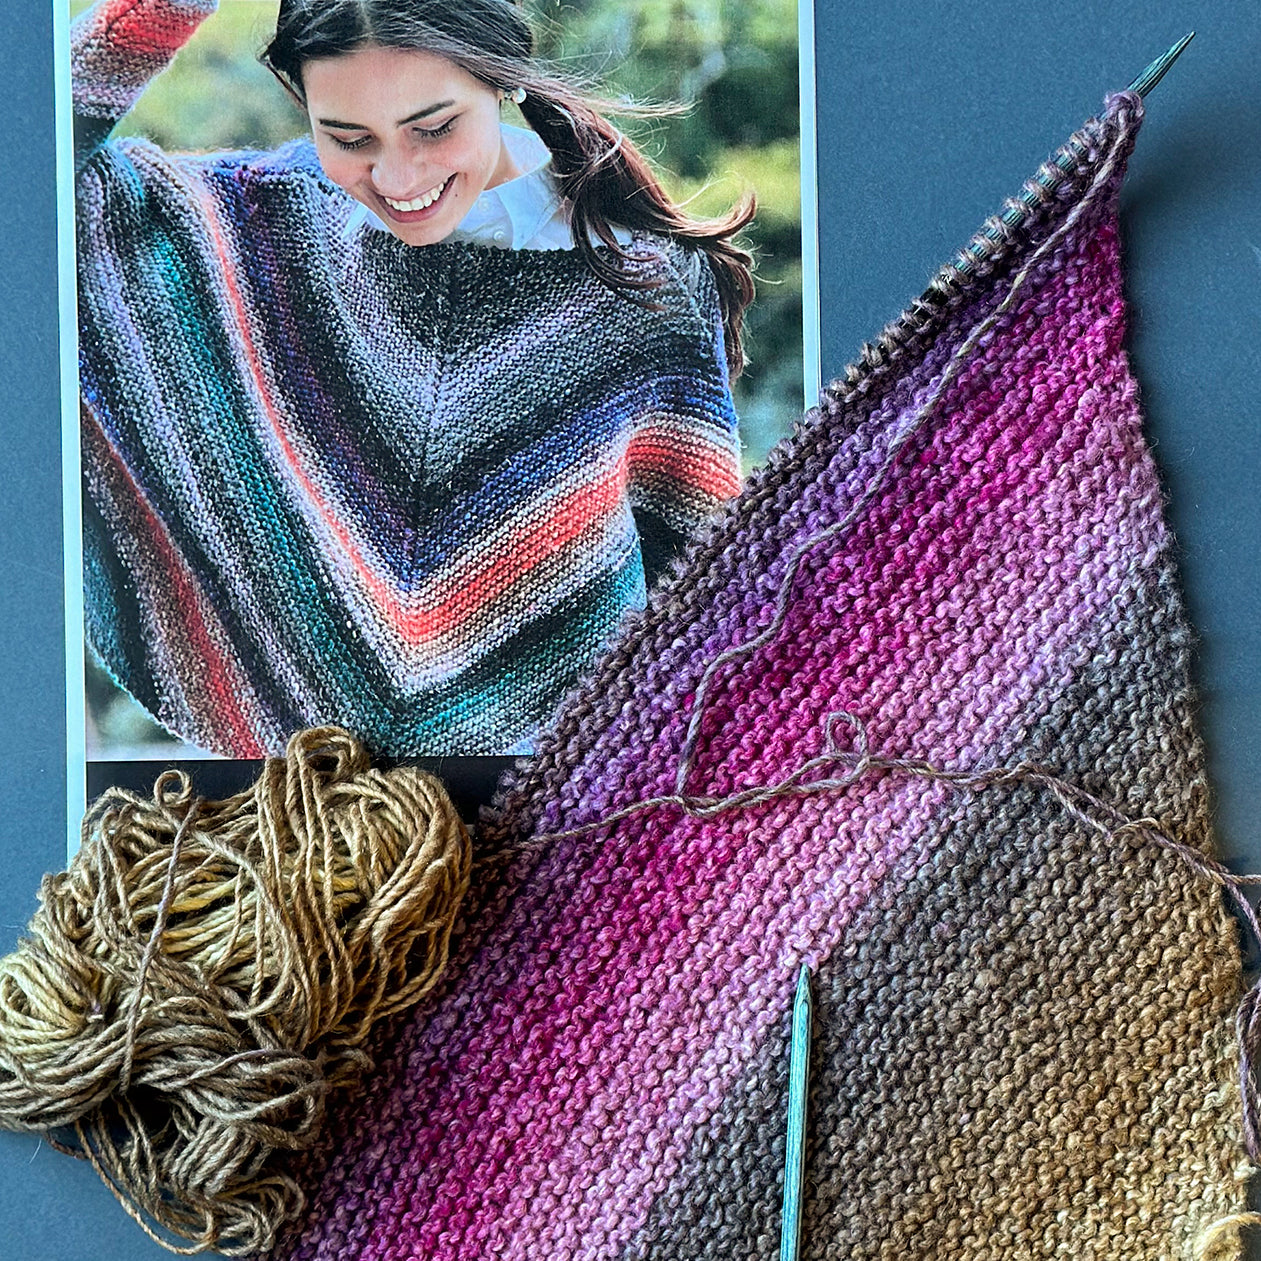 Sara's Jumper Journey - Garter Stitch Sweater in Noro Silk Garden Aran